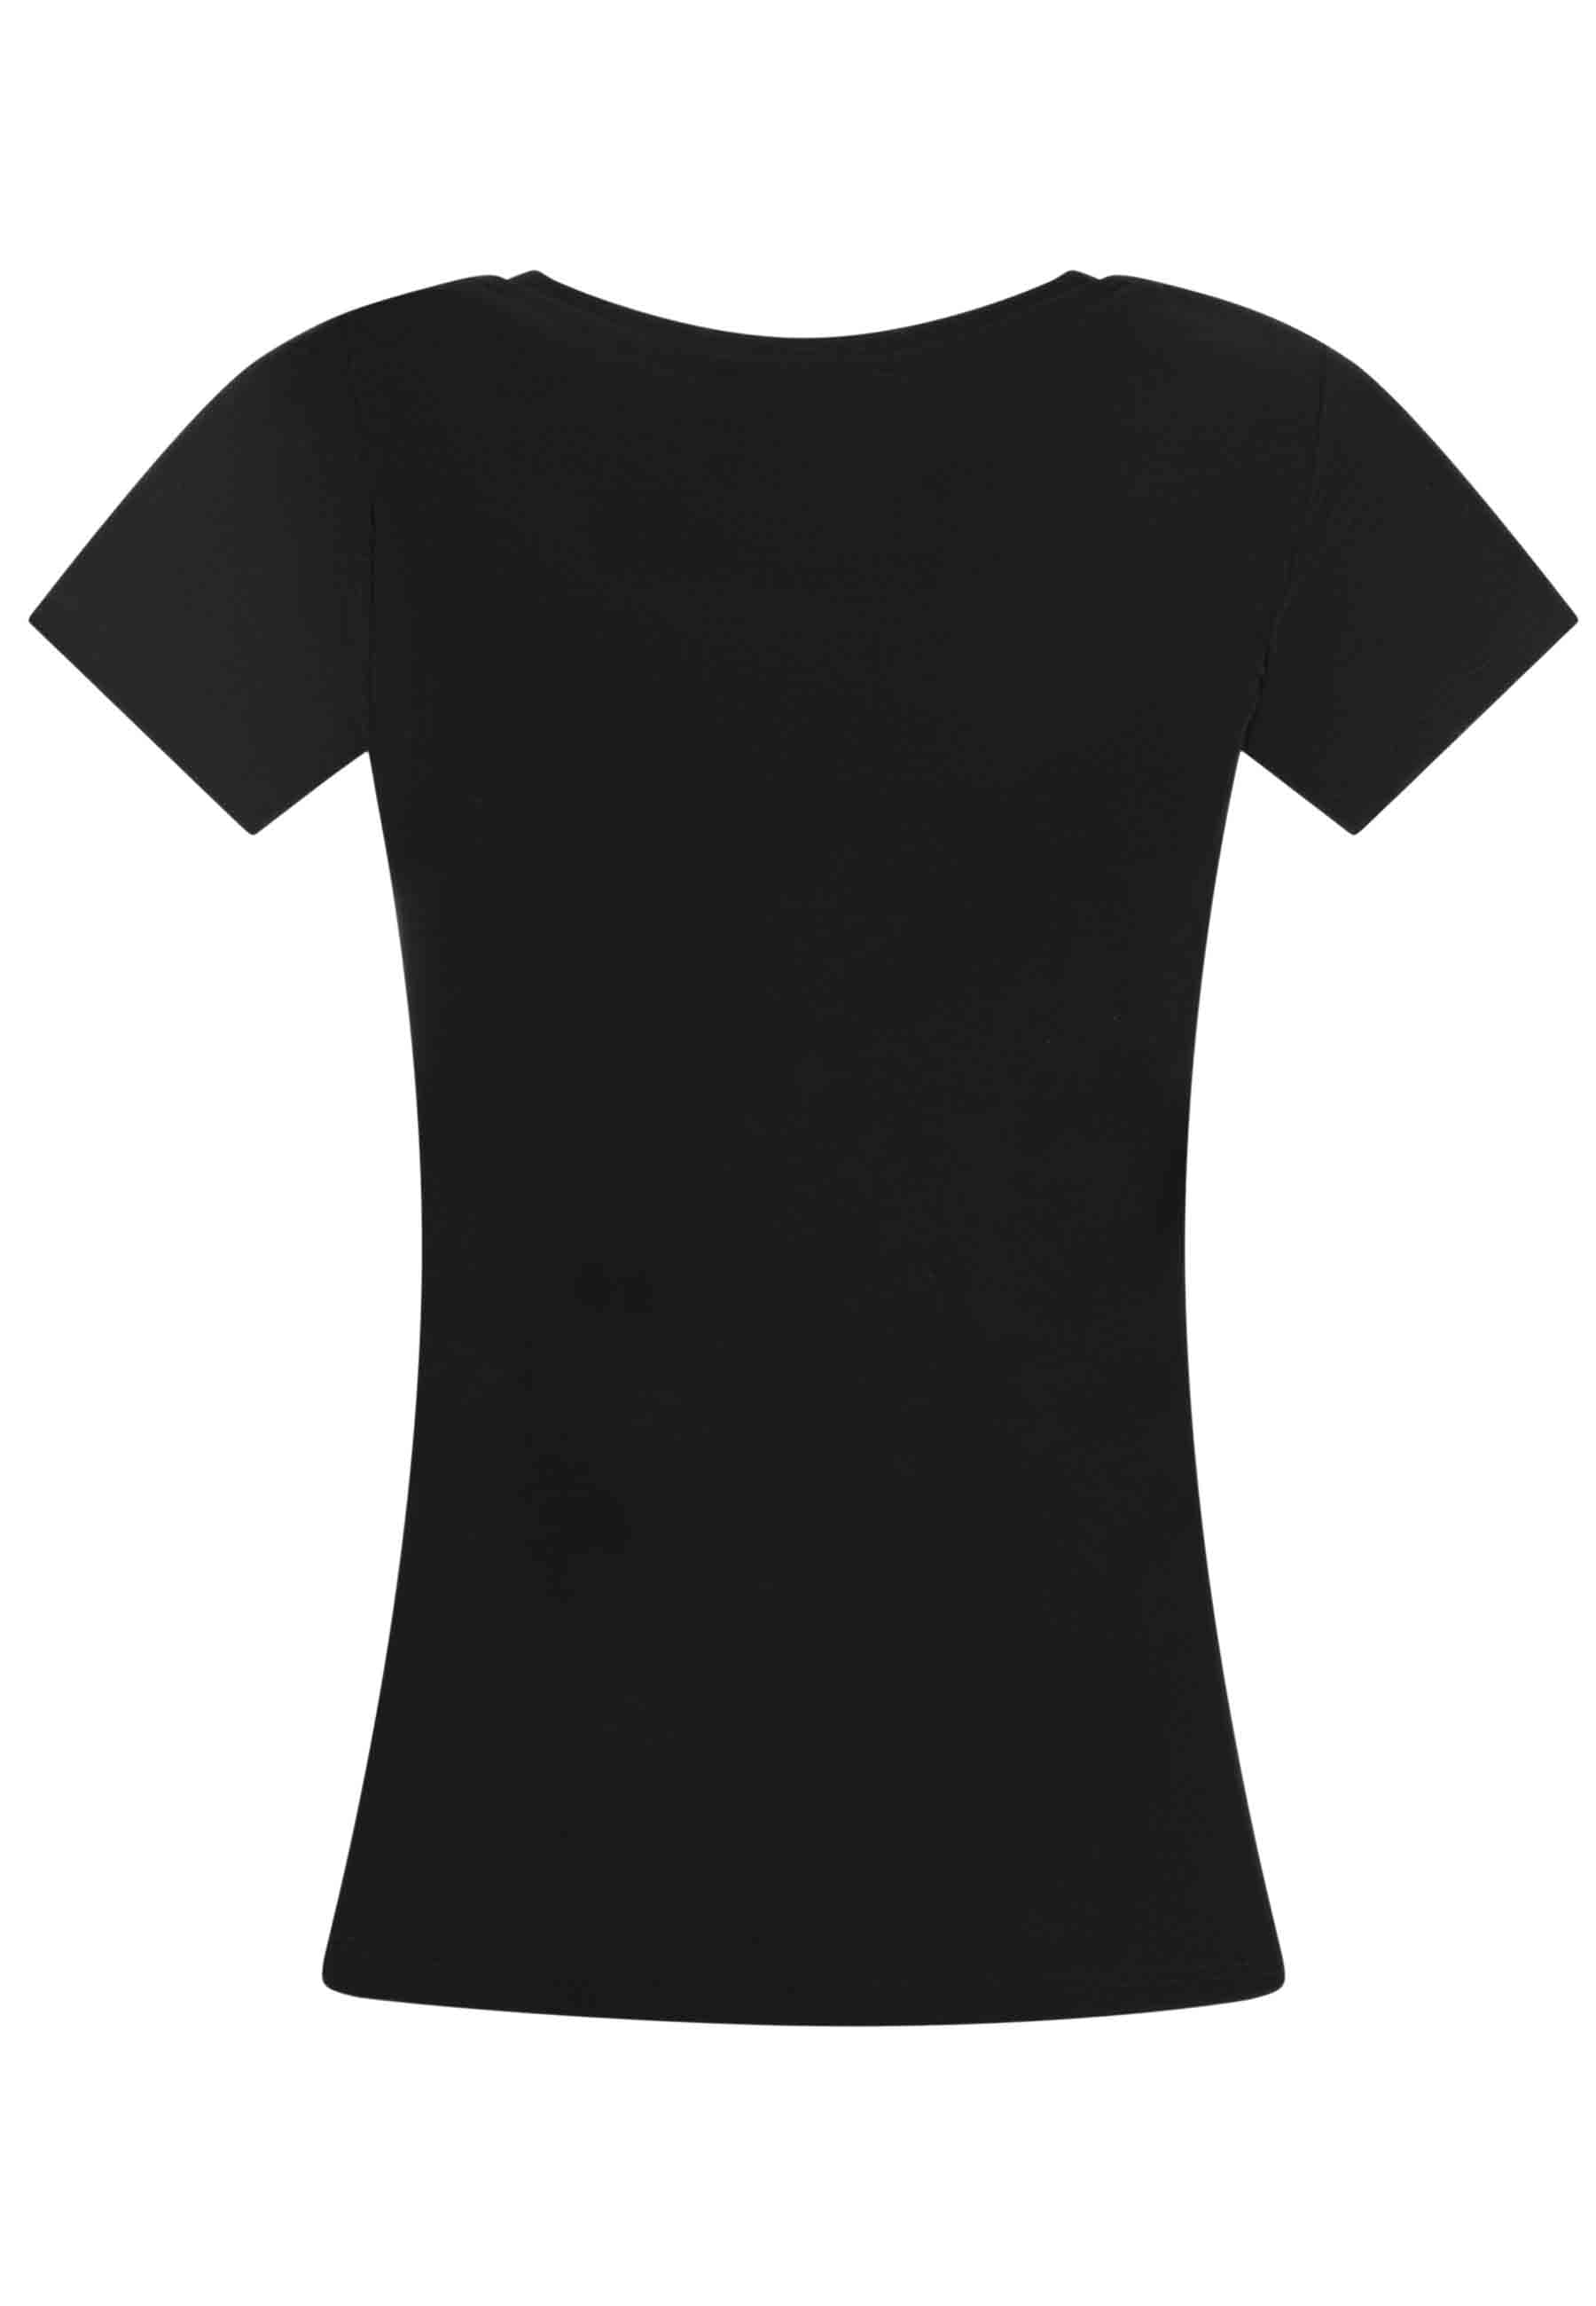 T-shirt donna Savage in cotone nero con stampa in seta